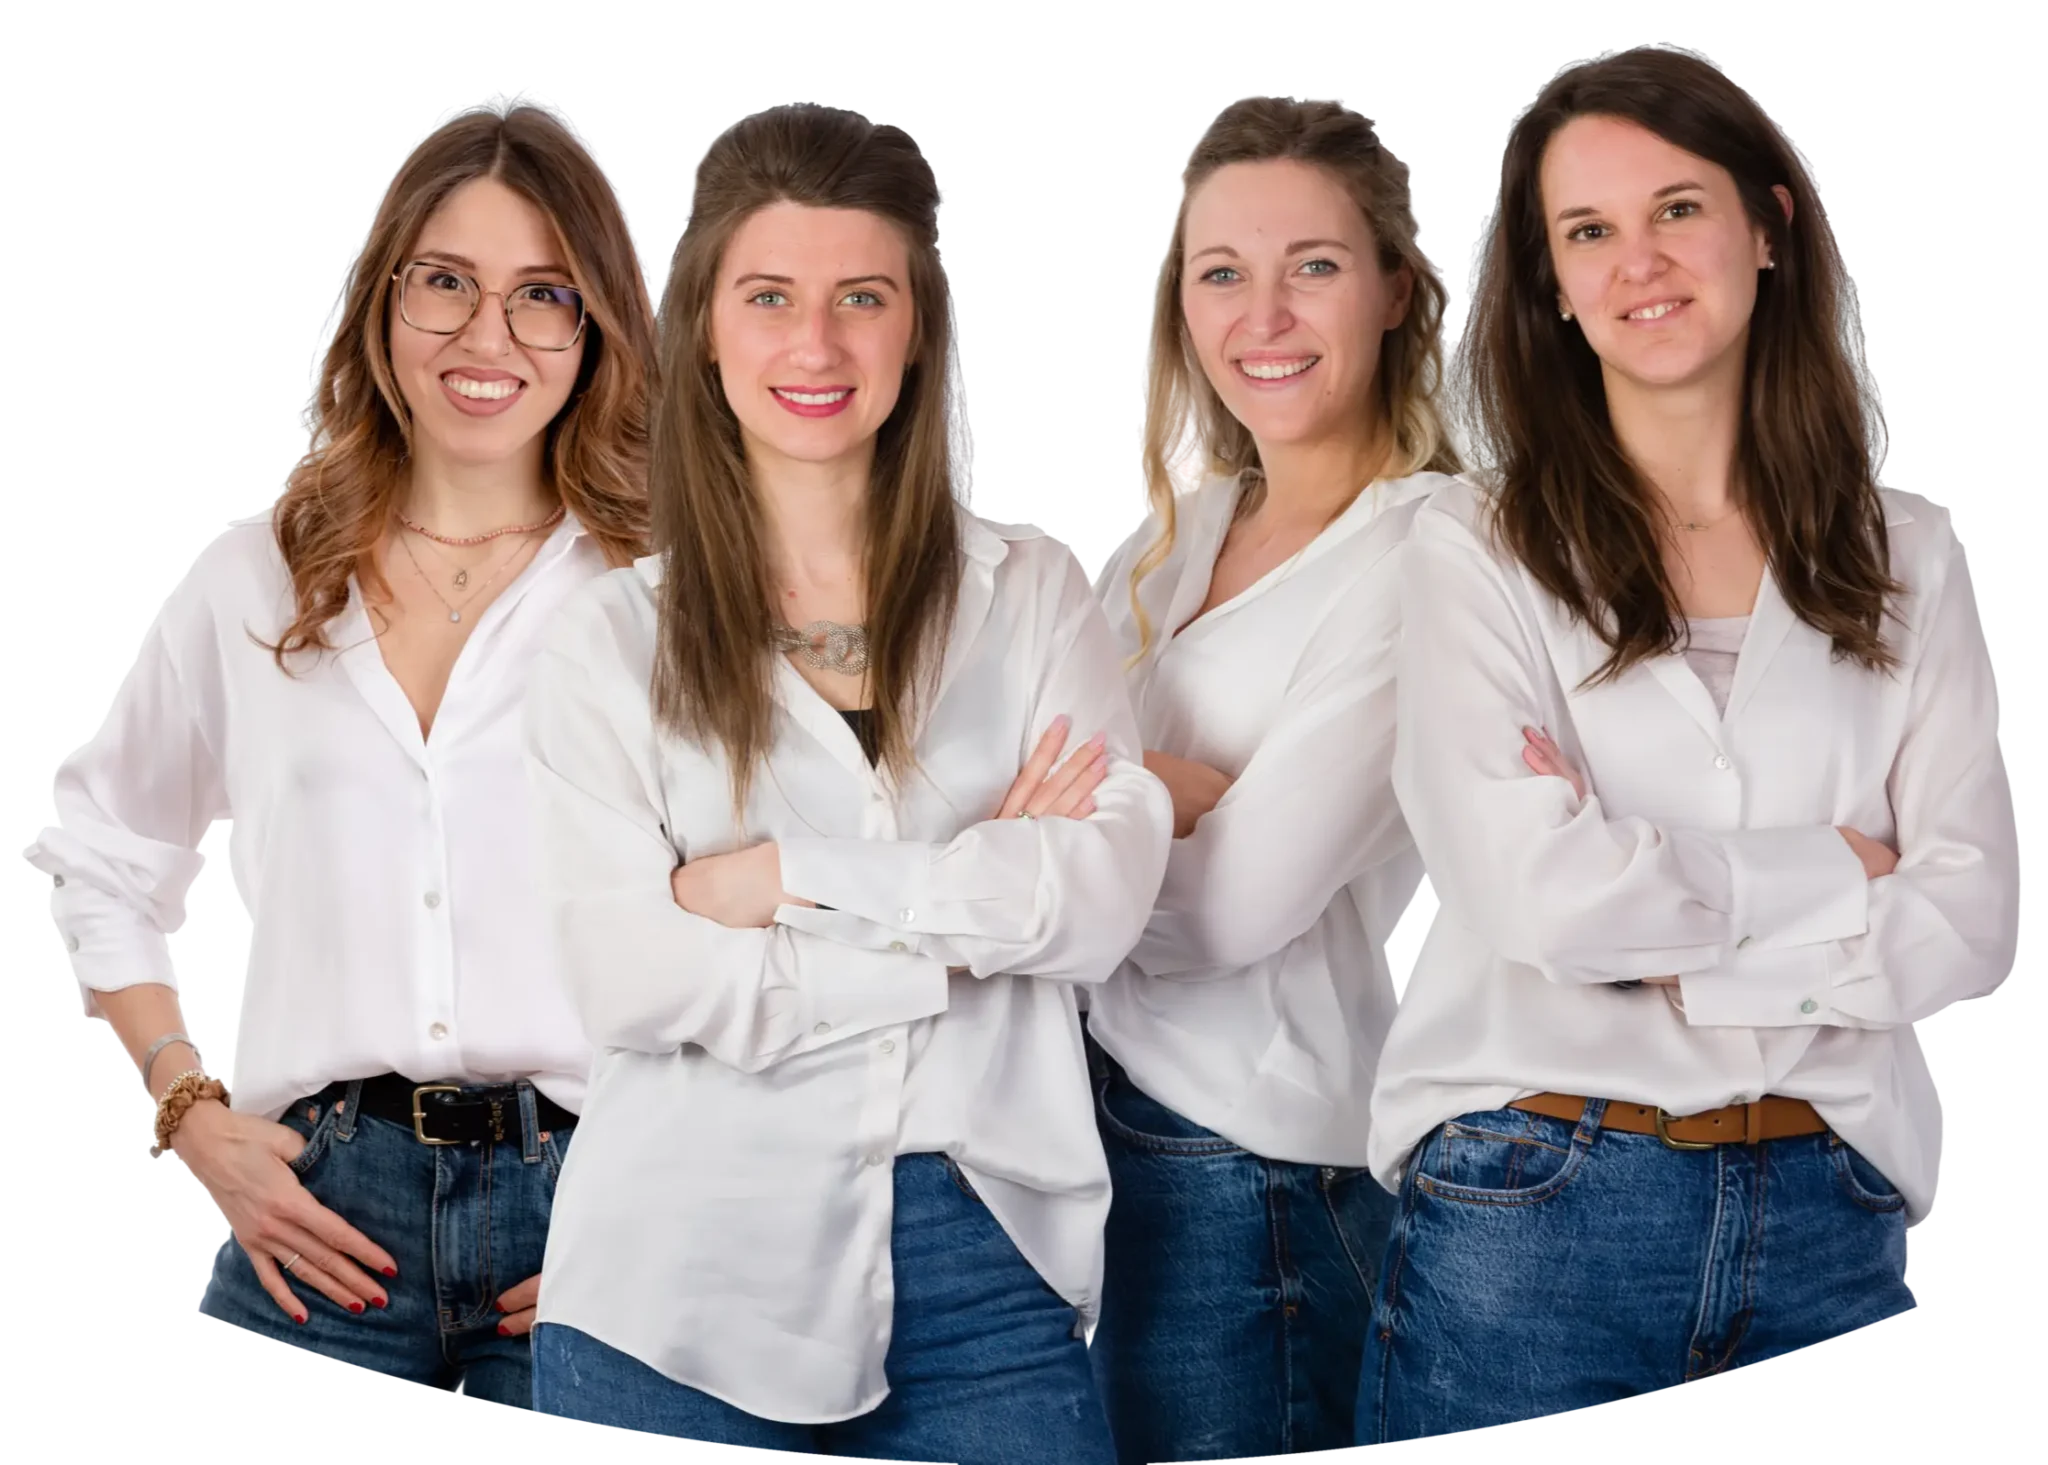 Lo psicologo in jeans e camicia bianca, rappresentato come un gruppo di 4 psicologhe che offrono la consulenza gratuita per la giornata del fiocchetto lilla